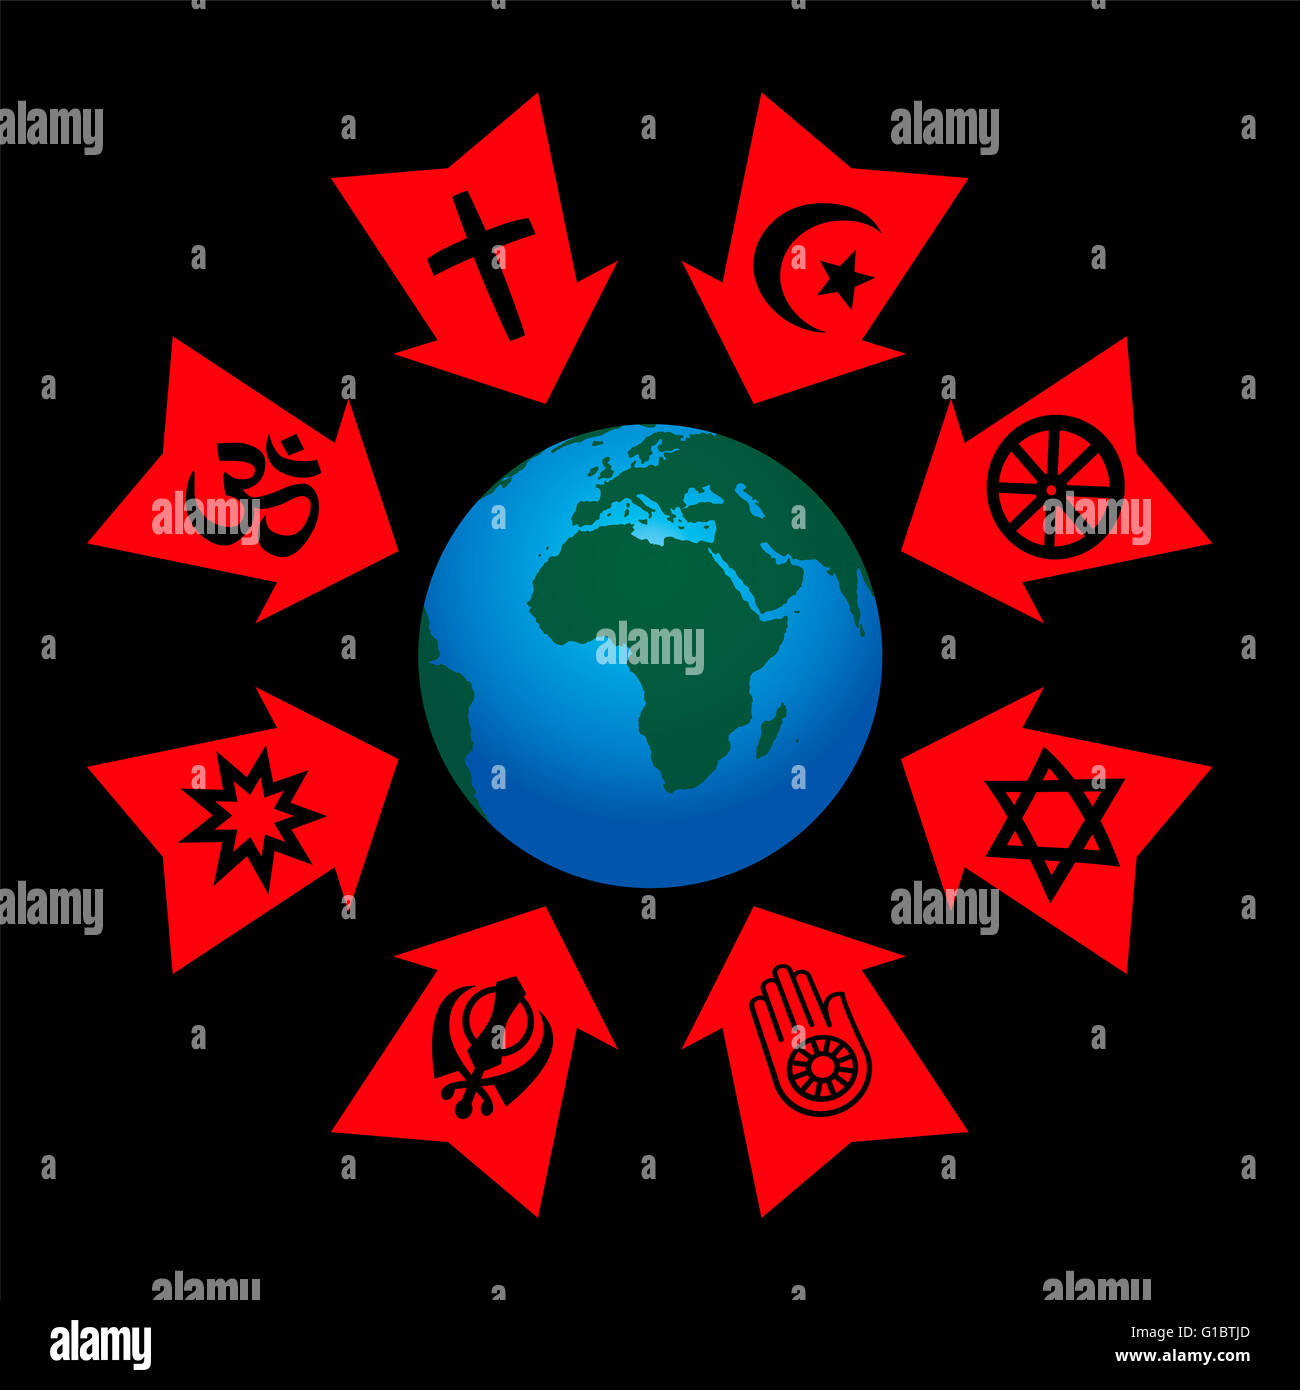 Controllo religiosa, la manipolazione e l'influenza - frecce con i simboli delle religioni del mondo aggressivo puntando al pianeta terra. Foto Stock